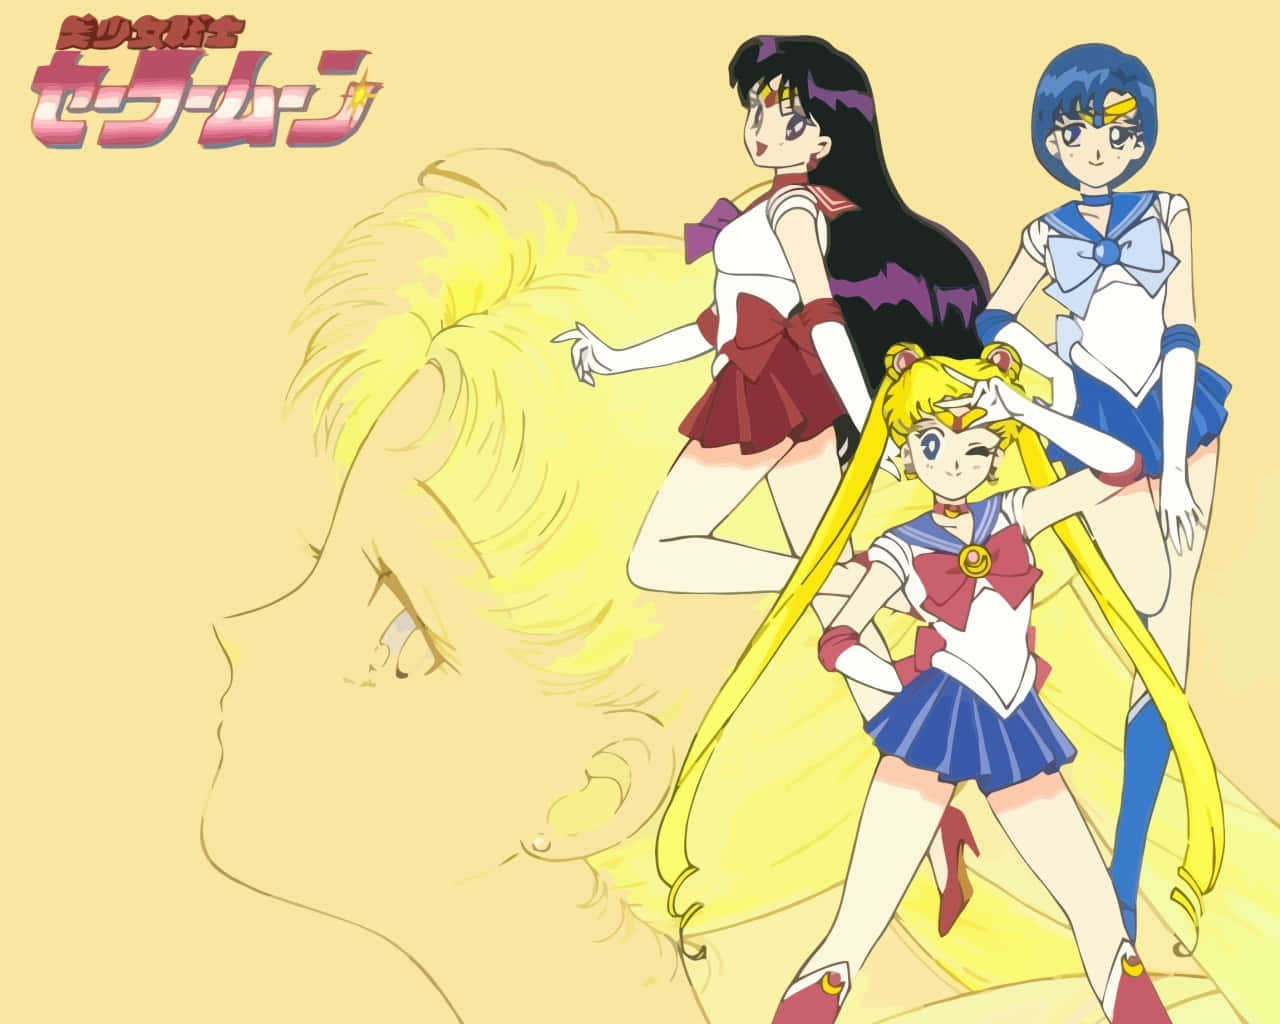 Classic anime warrior, Sailor Moon